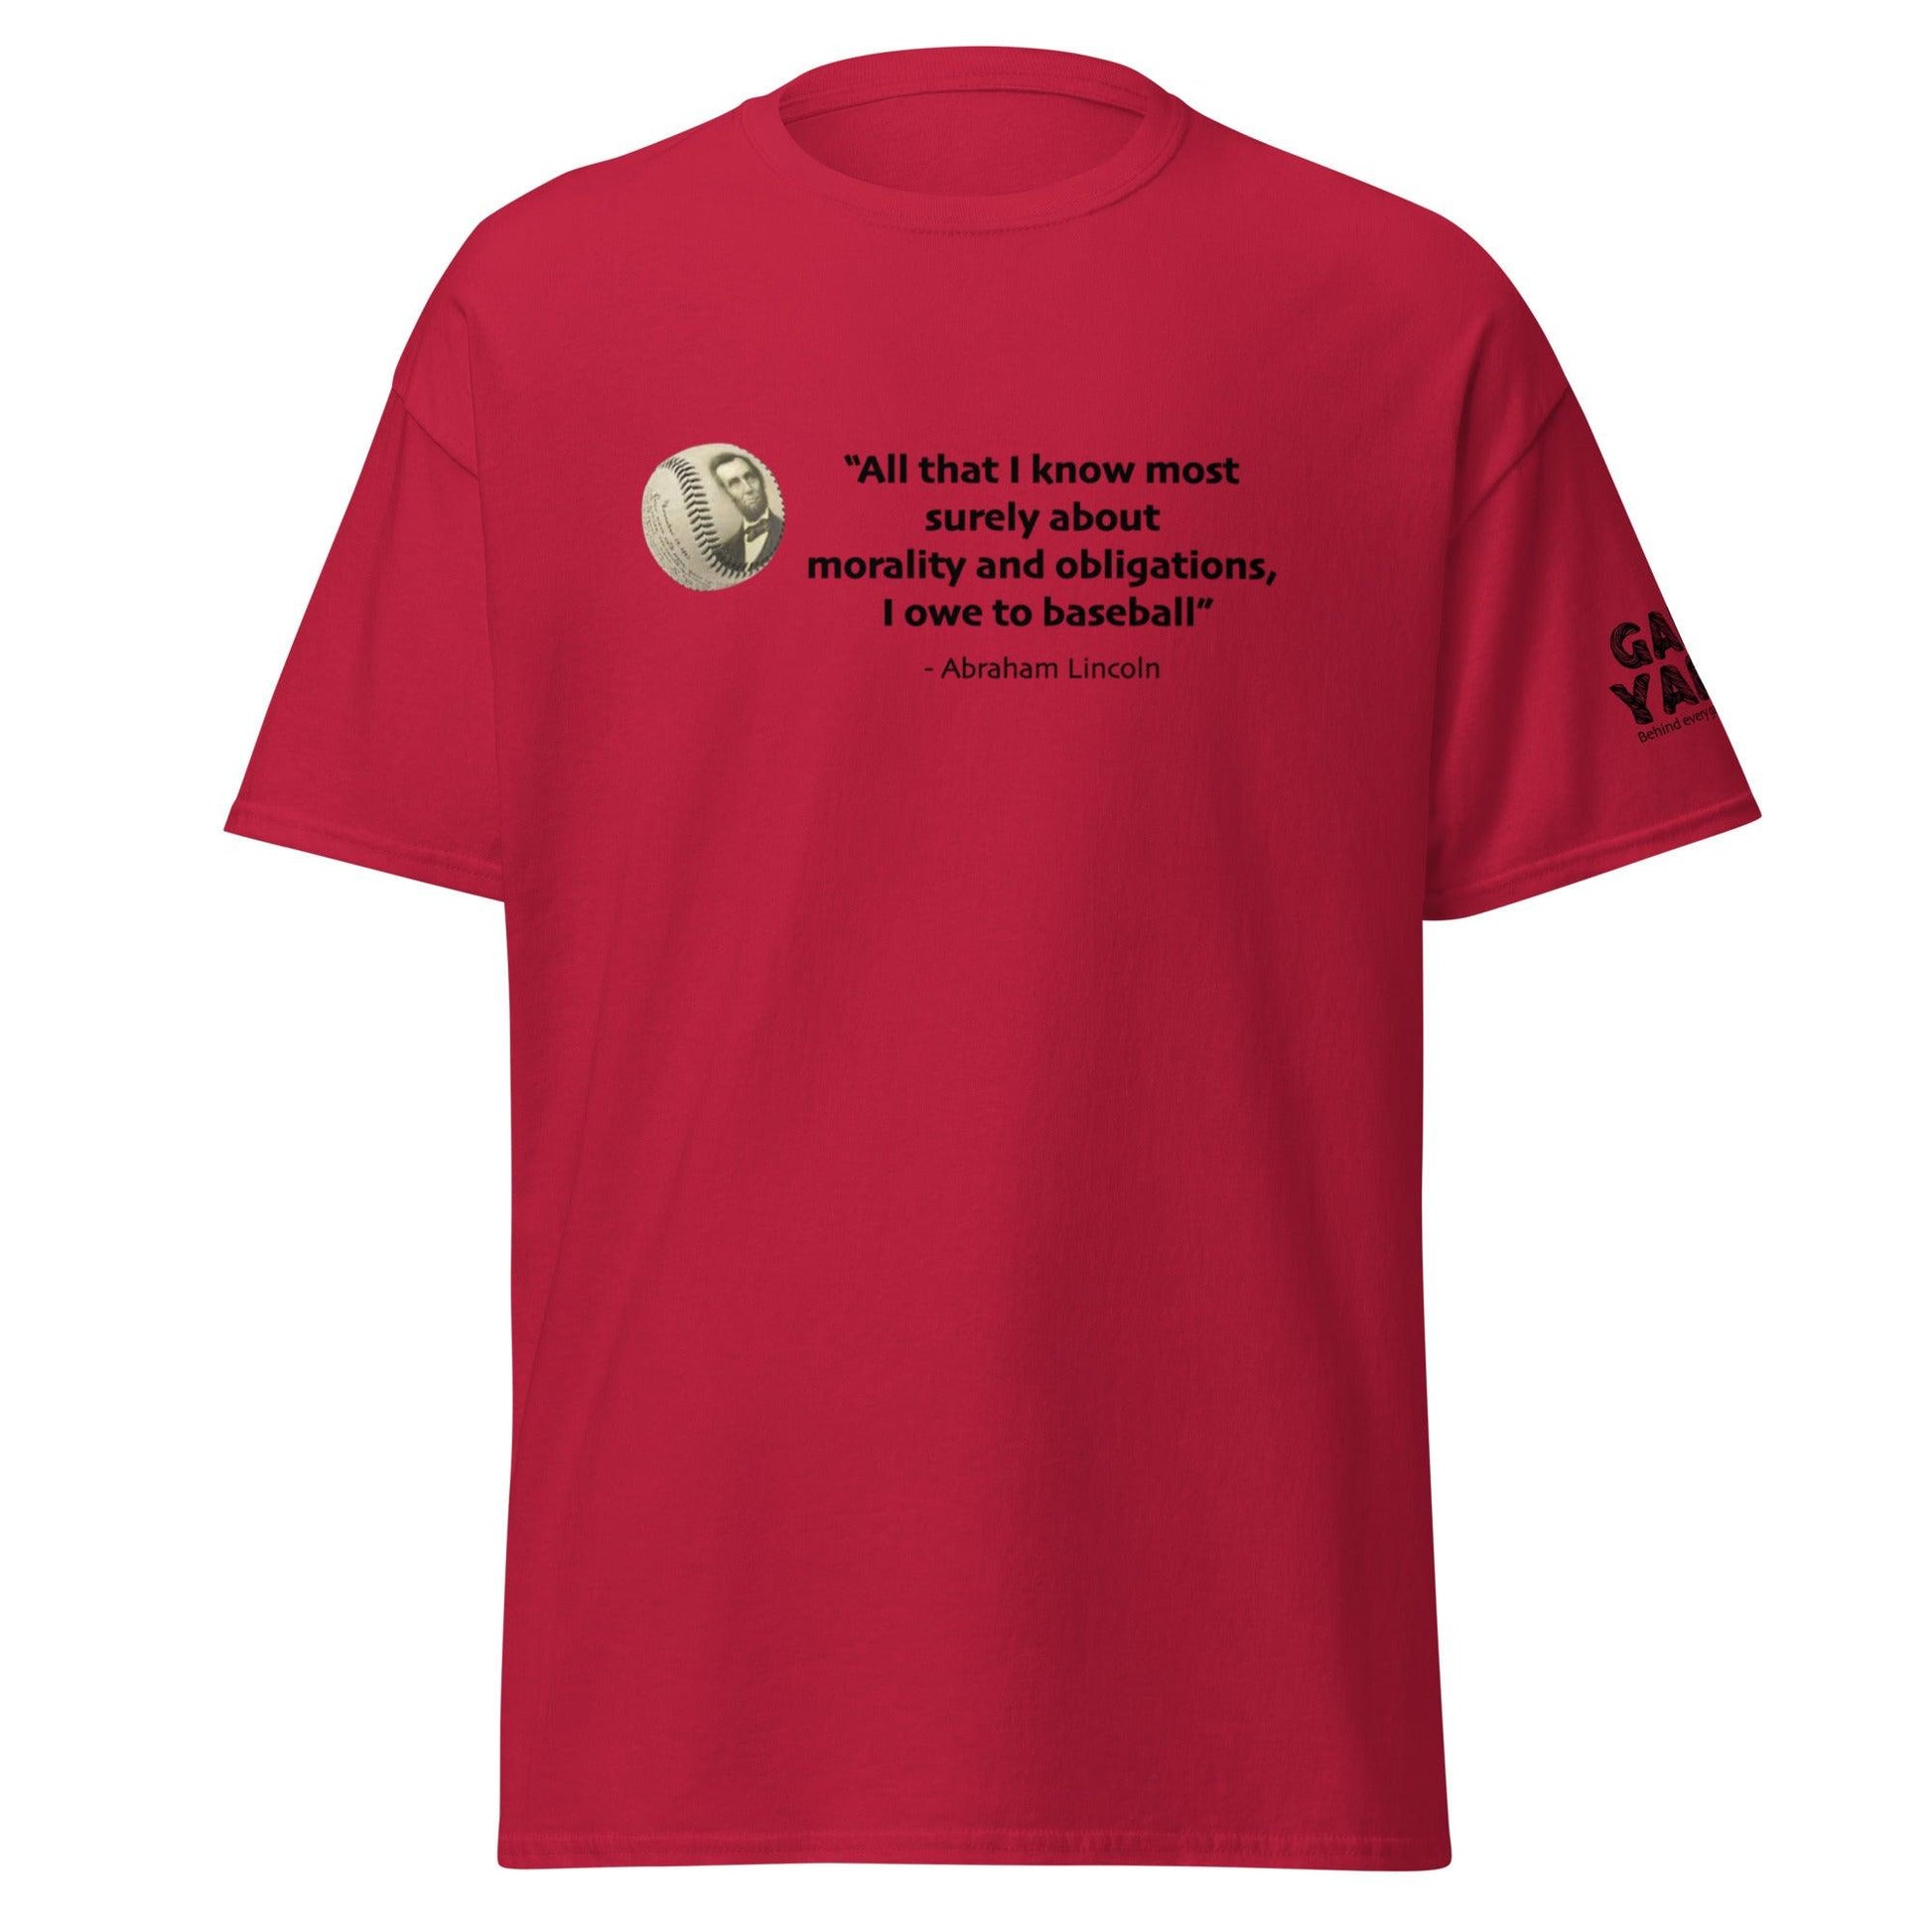 Abraham Lincoln Baseball T-shirt by Game Yarns.